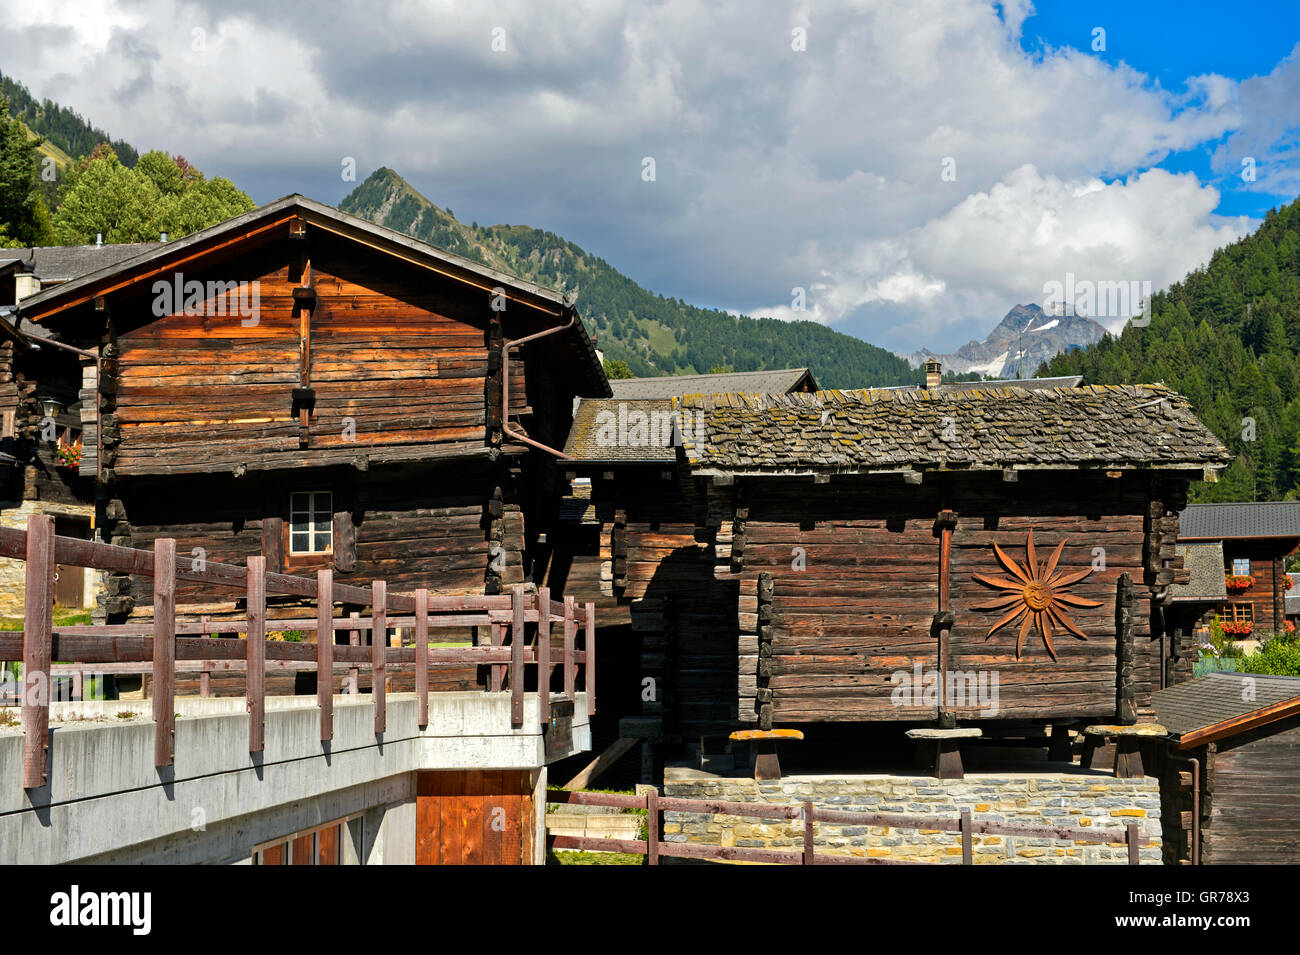 Valaisian Chalets, Binn, Binntal Valley, Valais, Switzerland Stock Photo